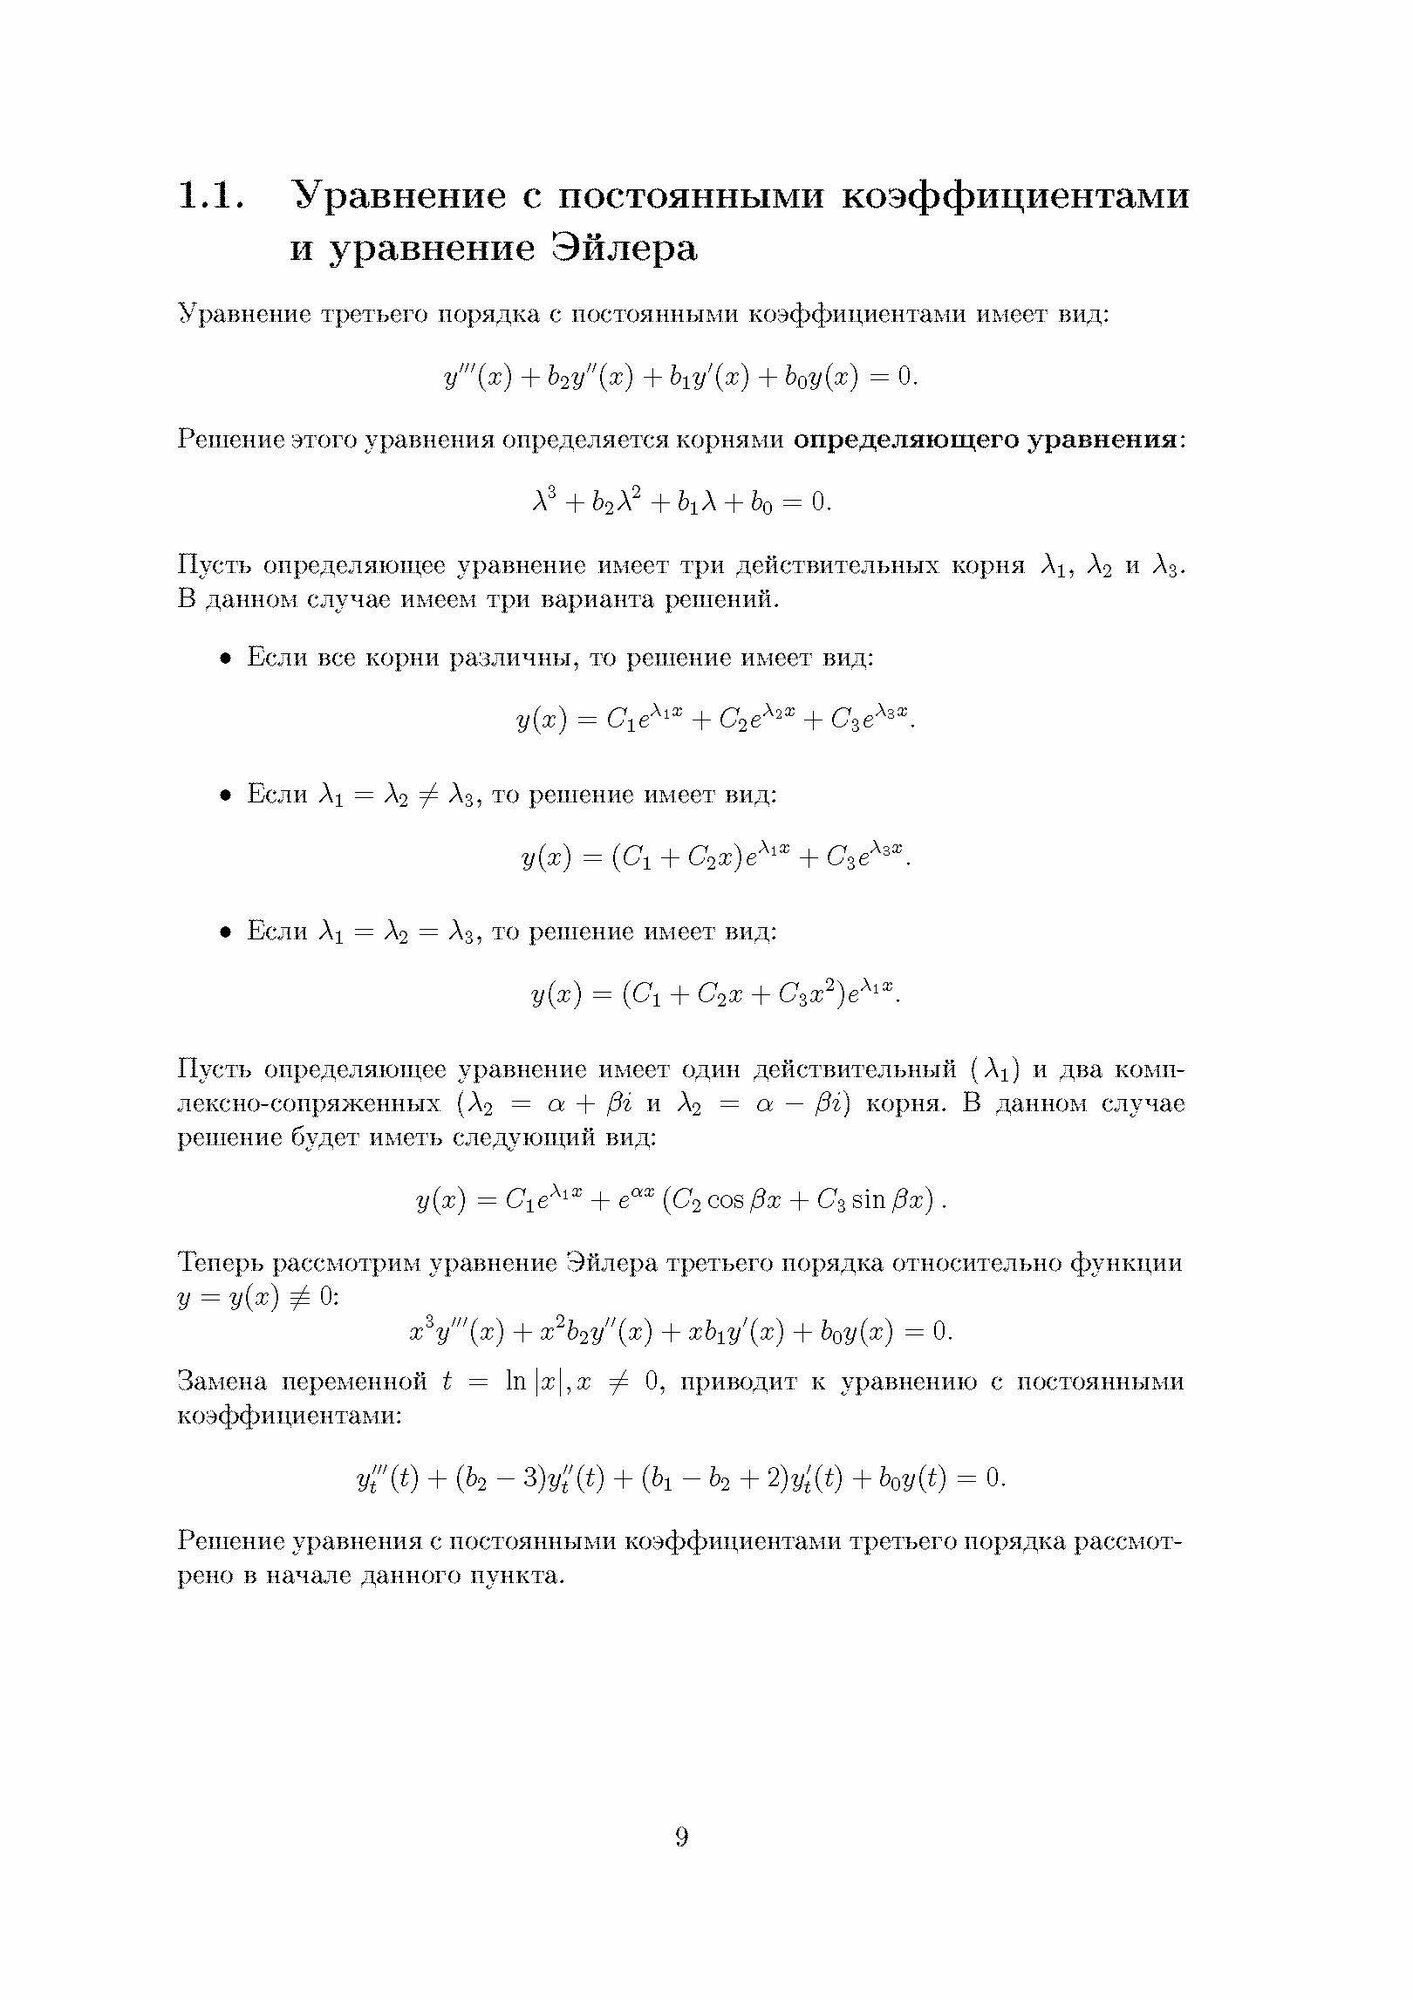 Дифференциальные уравнения третьего порядка - фото №10